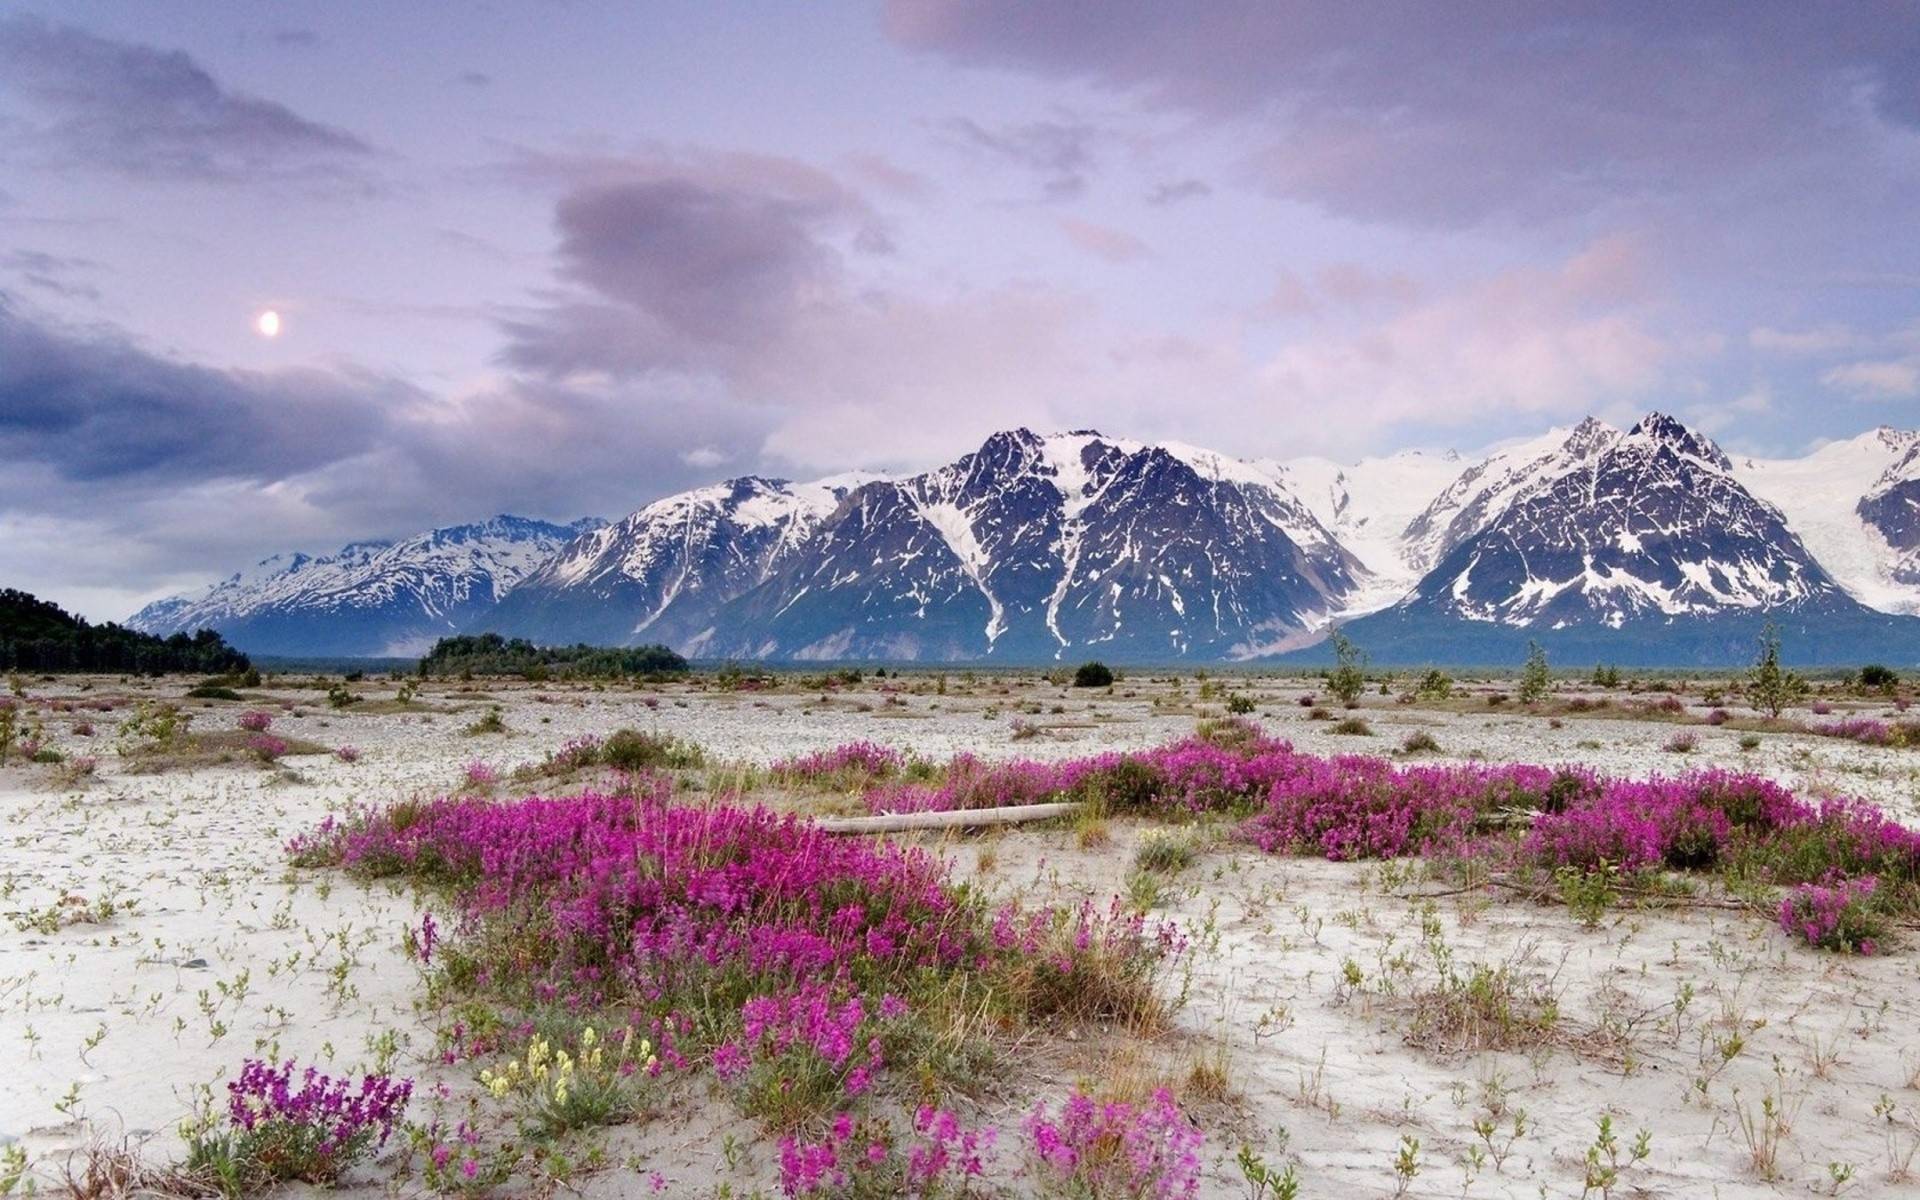 General 1920x1200 nature landscape mountains flowers Alaska summer nordic landscapes plants snowy peak